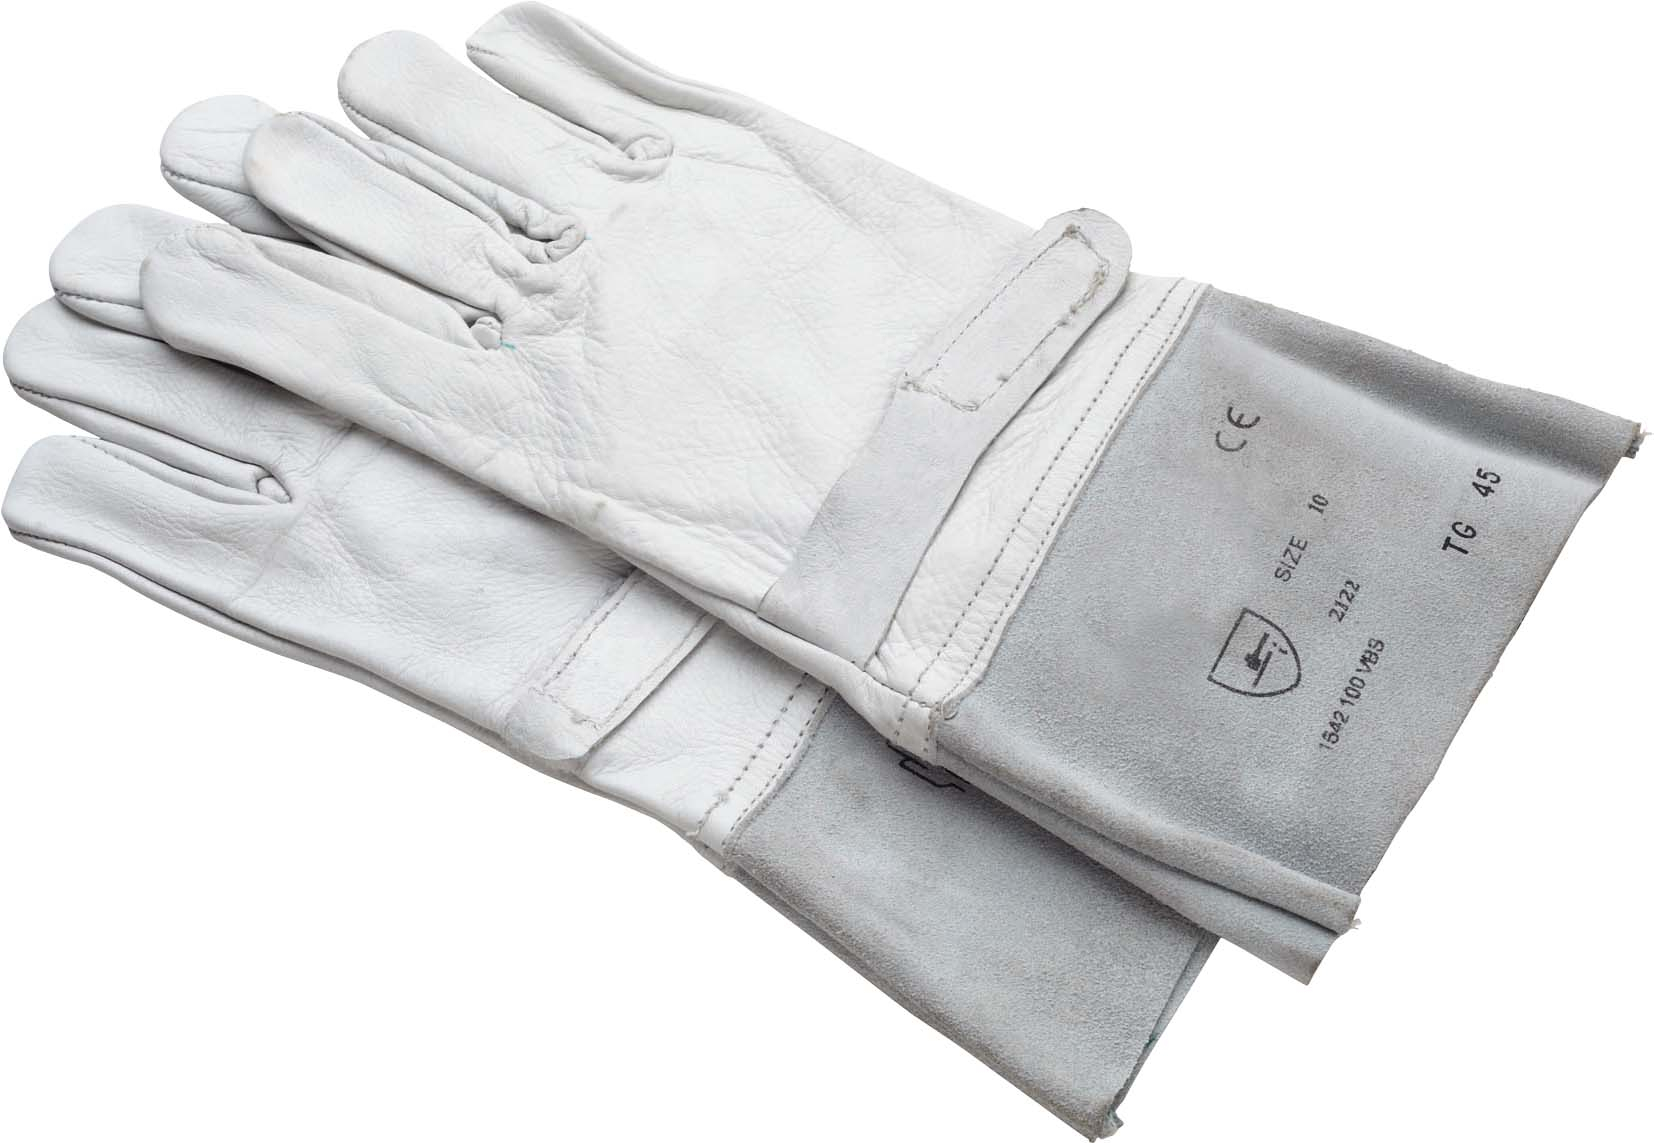 Z-421-ASur-gants  Sur-gants de protection en crispin siliconé